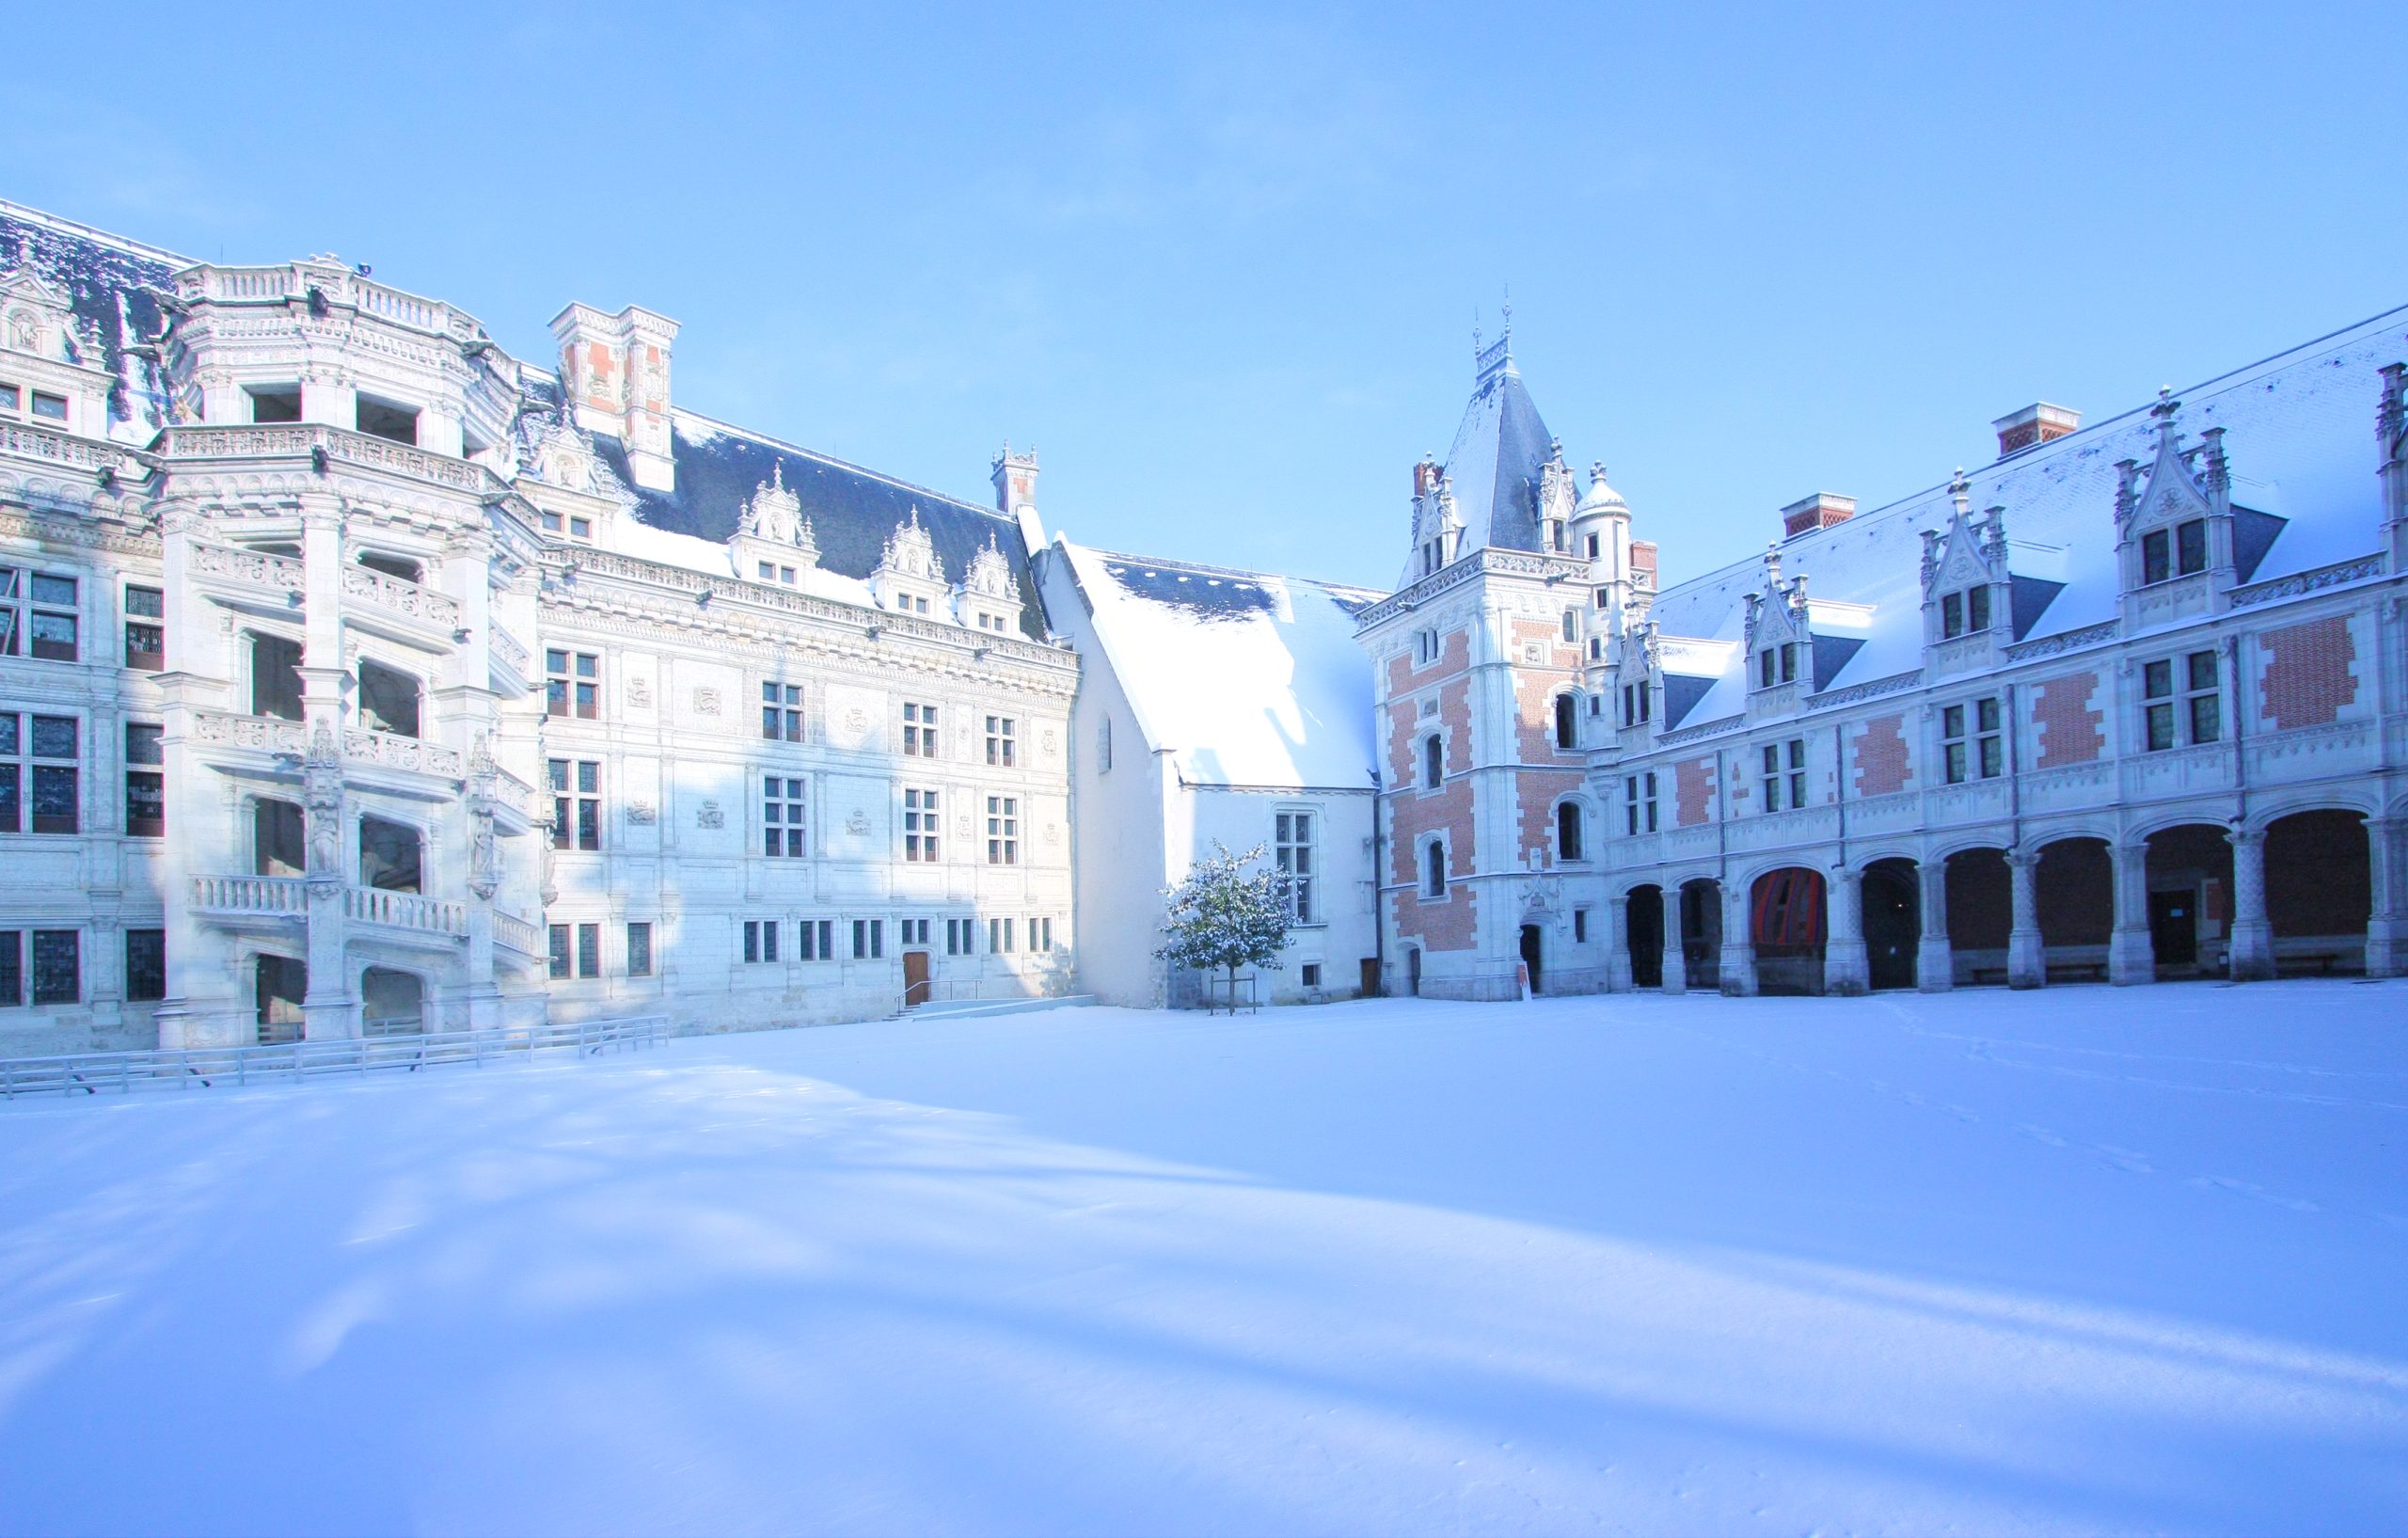 Il castello Reale di Blois sotto la neve. ©Y. Boukef